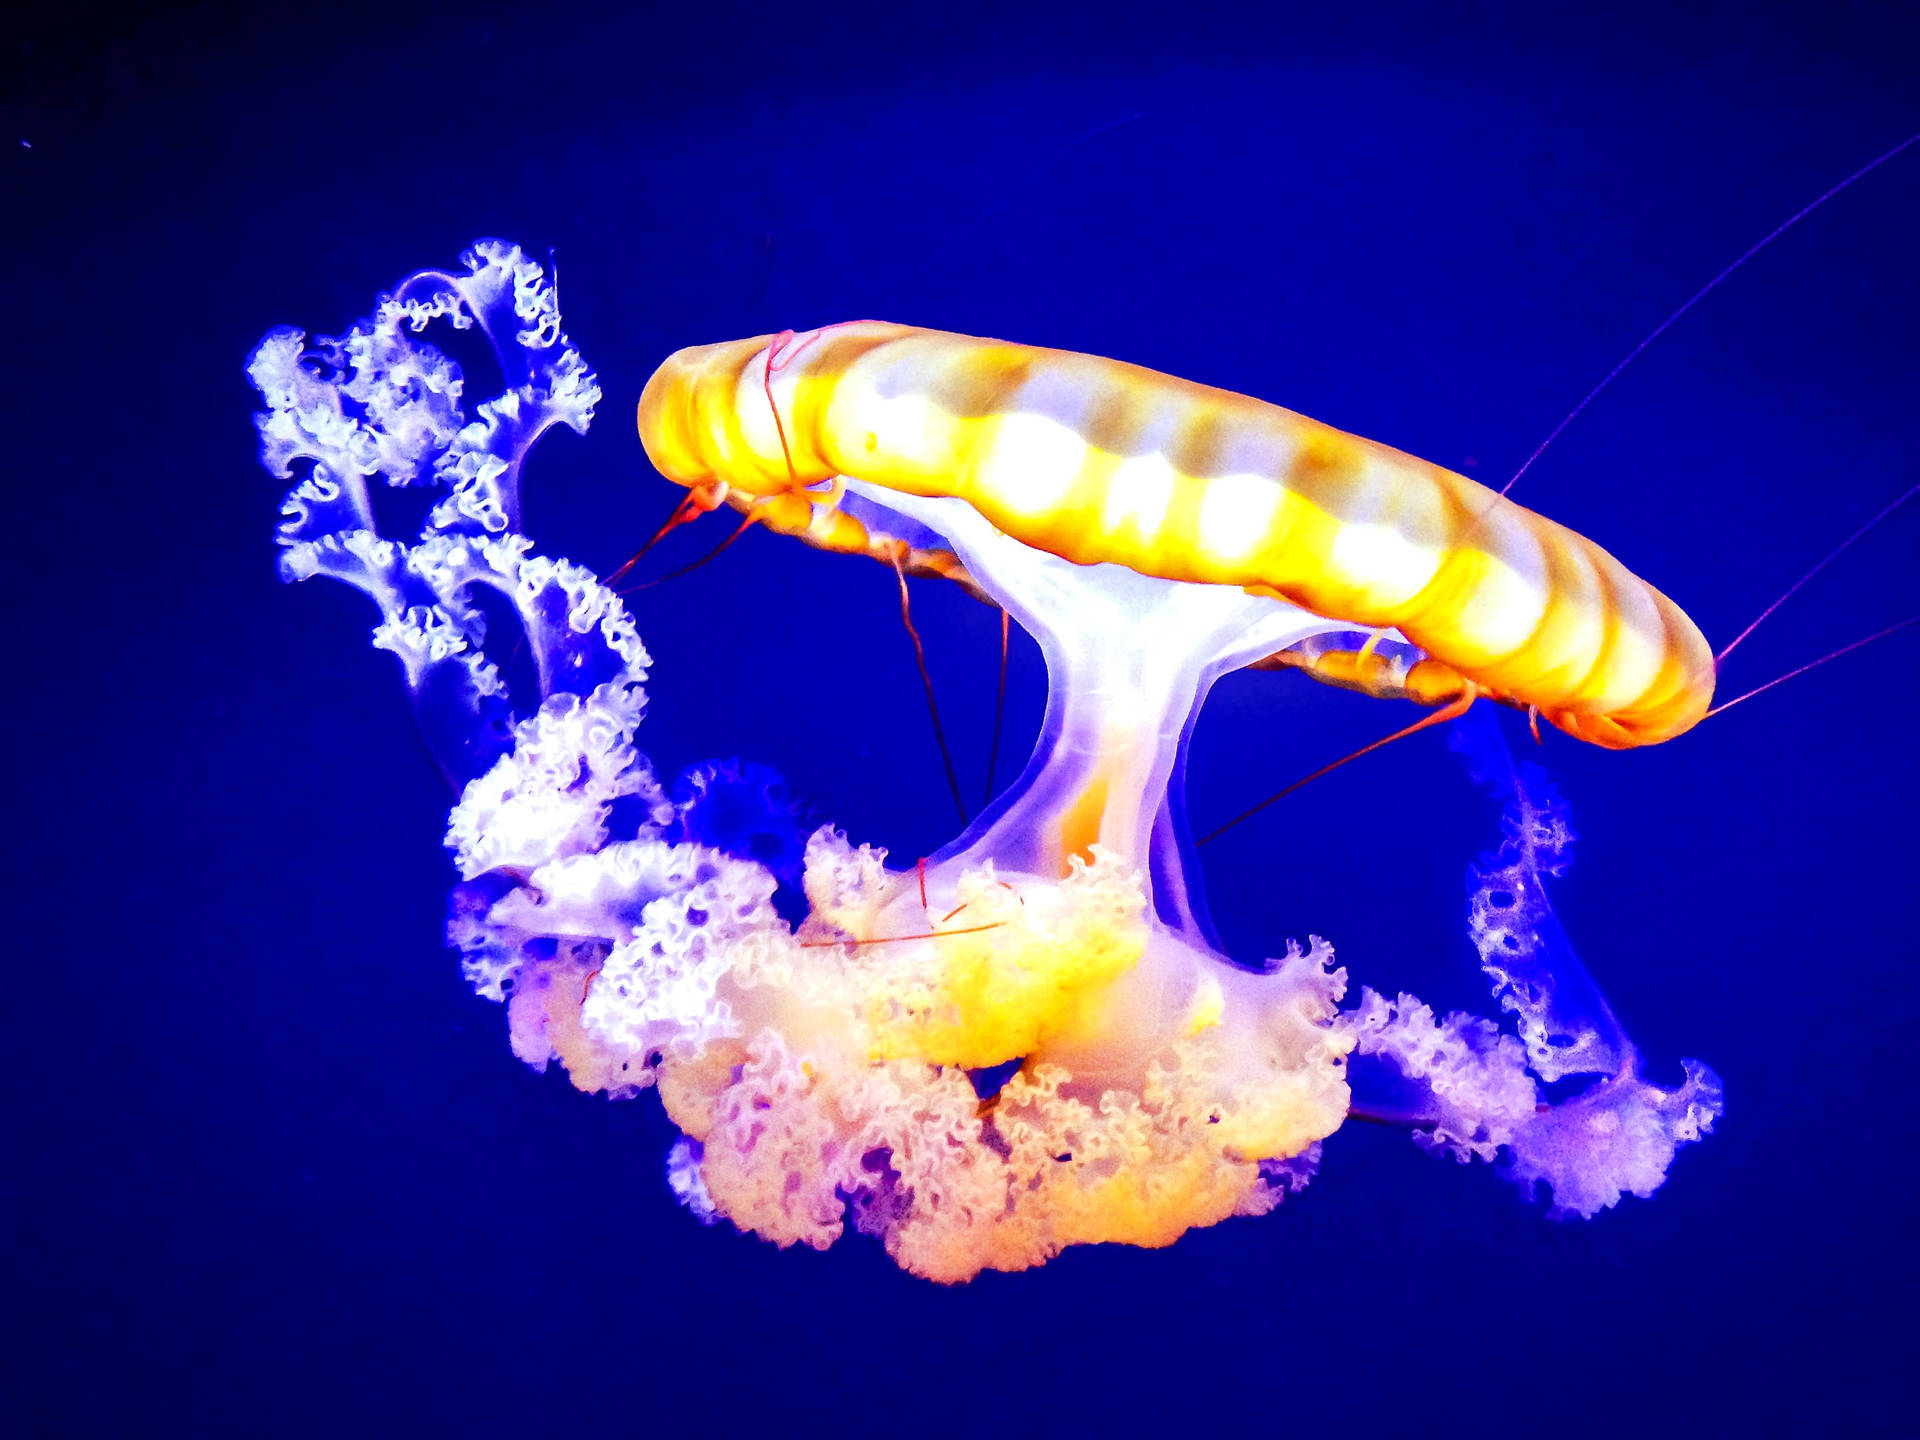 Yellow Jellyfish In Blue Underwater Background